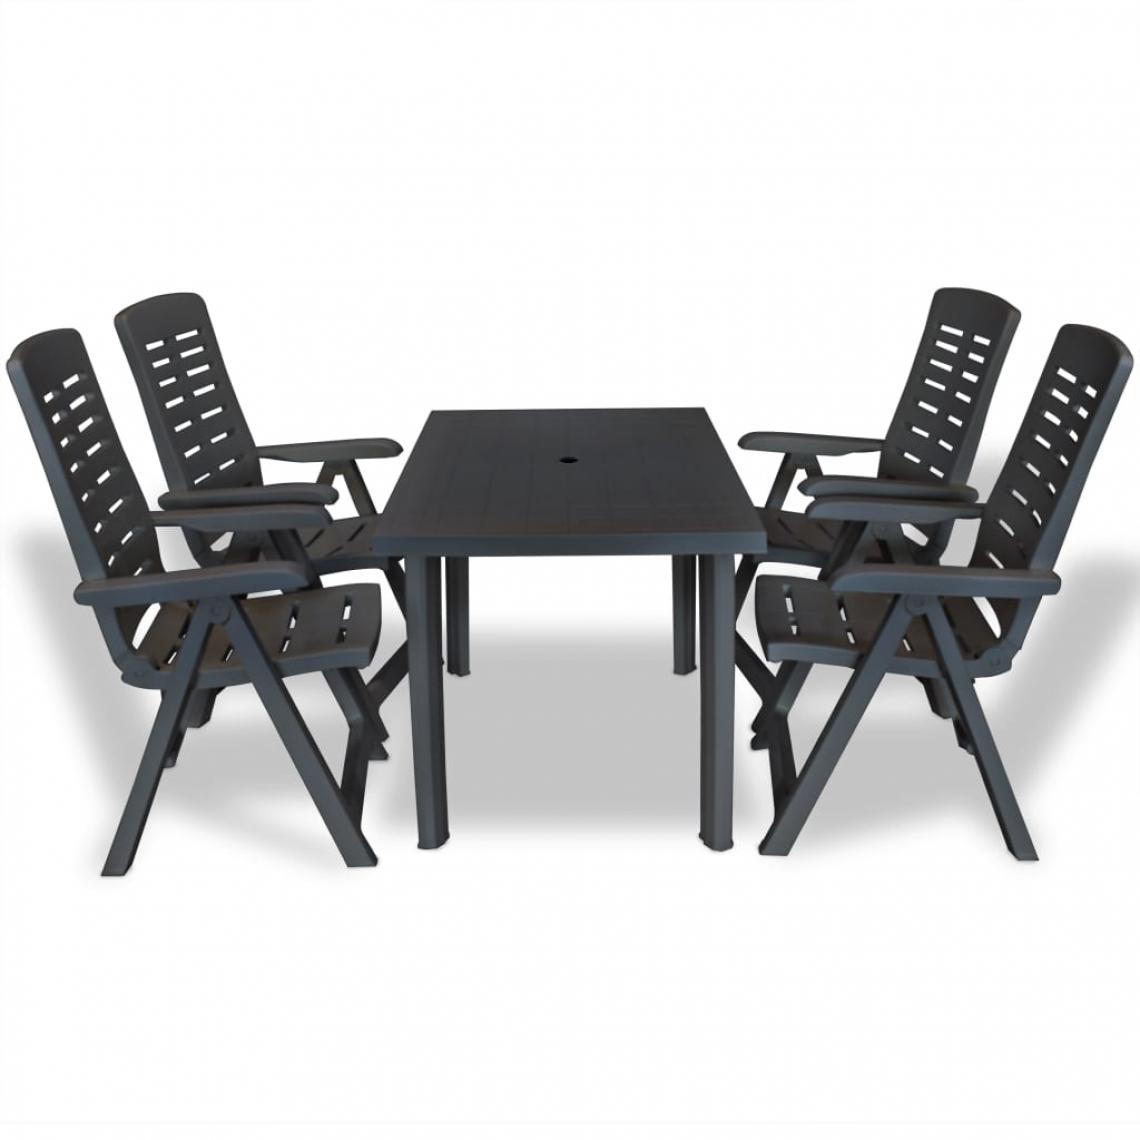 Chunhelife - Mobilier à dîner d'extérieur 5 pcs Plastique Anthracite - Ensembles canapés et fauteuils